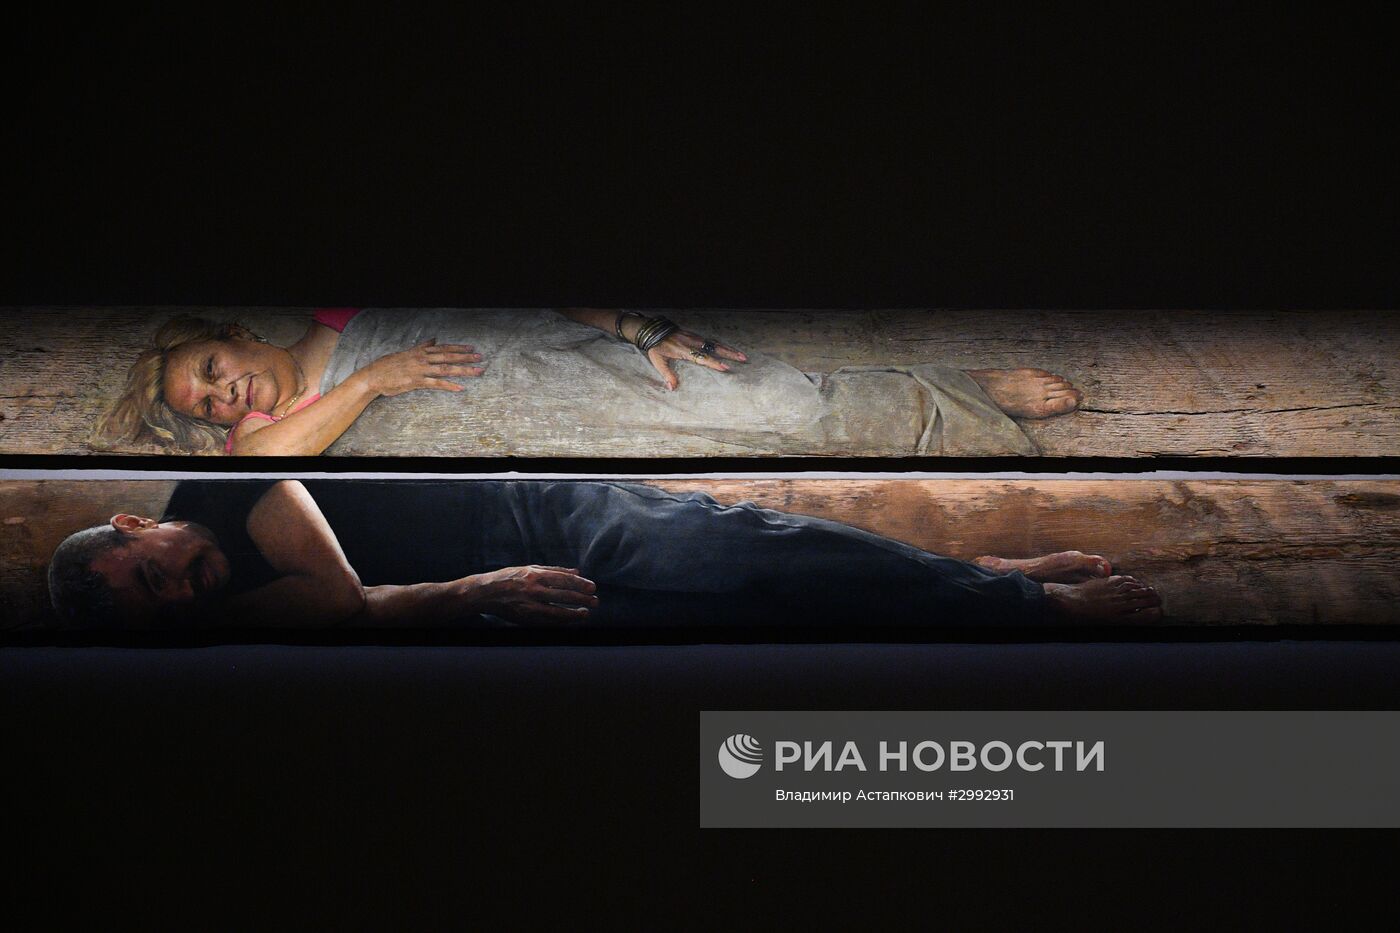 Показ выставок "Чистые основы" Христоса Бокороса и "Параллель двух легенд. Сосланбек Едзиев и Нико Пиросмани"